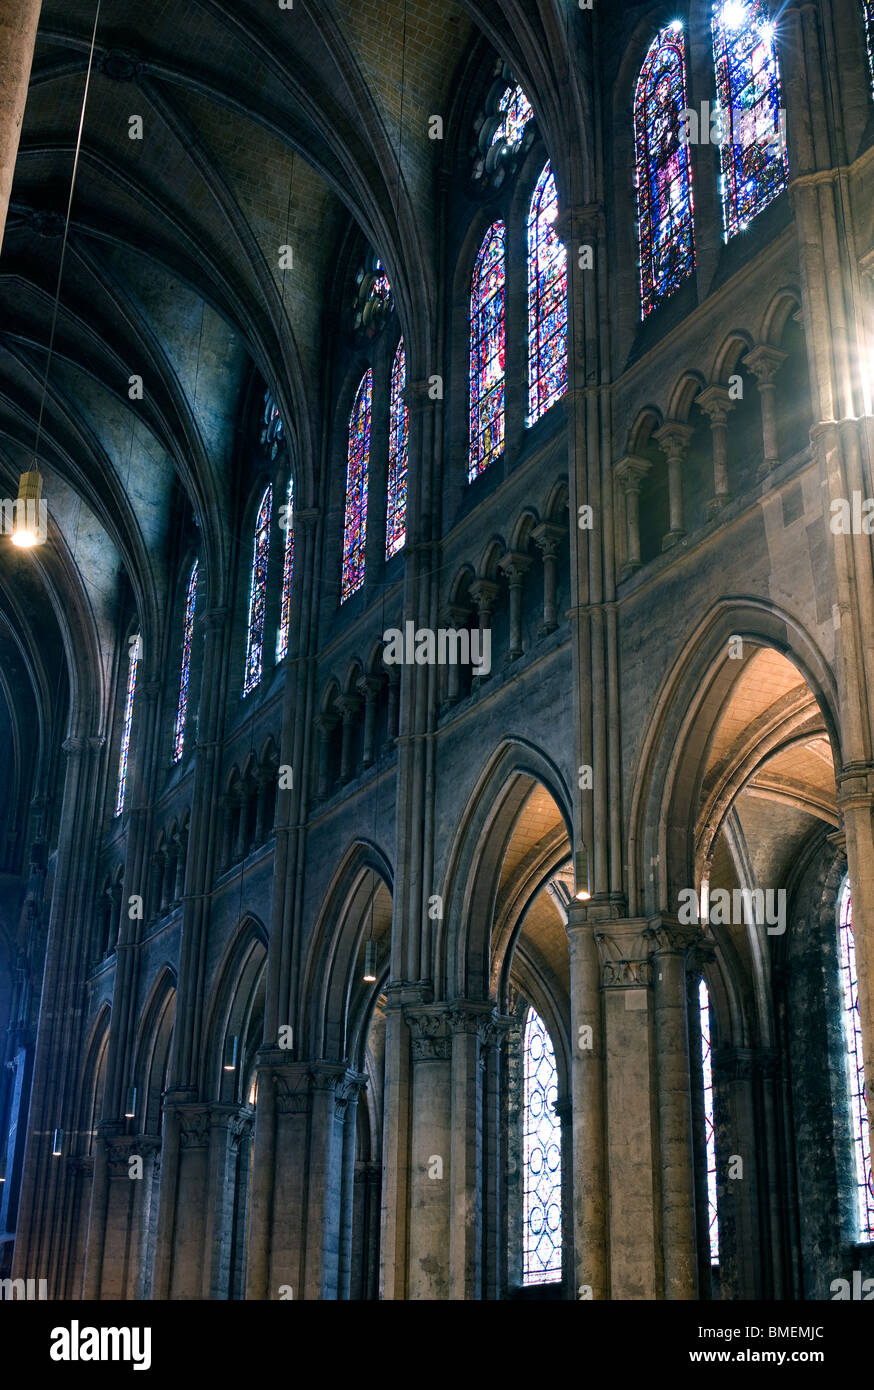 Nef centrale de la cathédrale de Chartres Chartres, France Banque D'Images